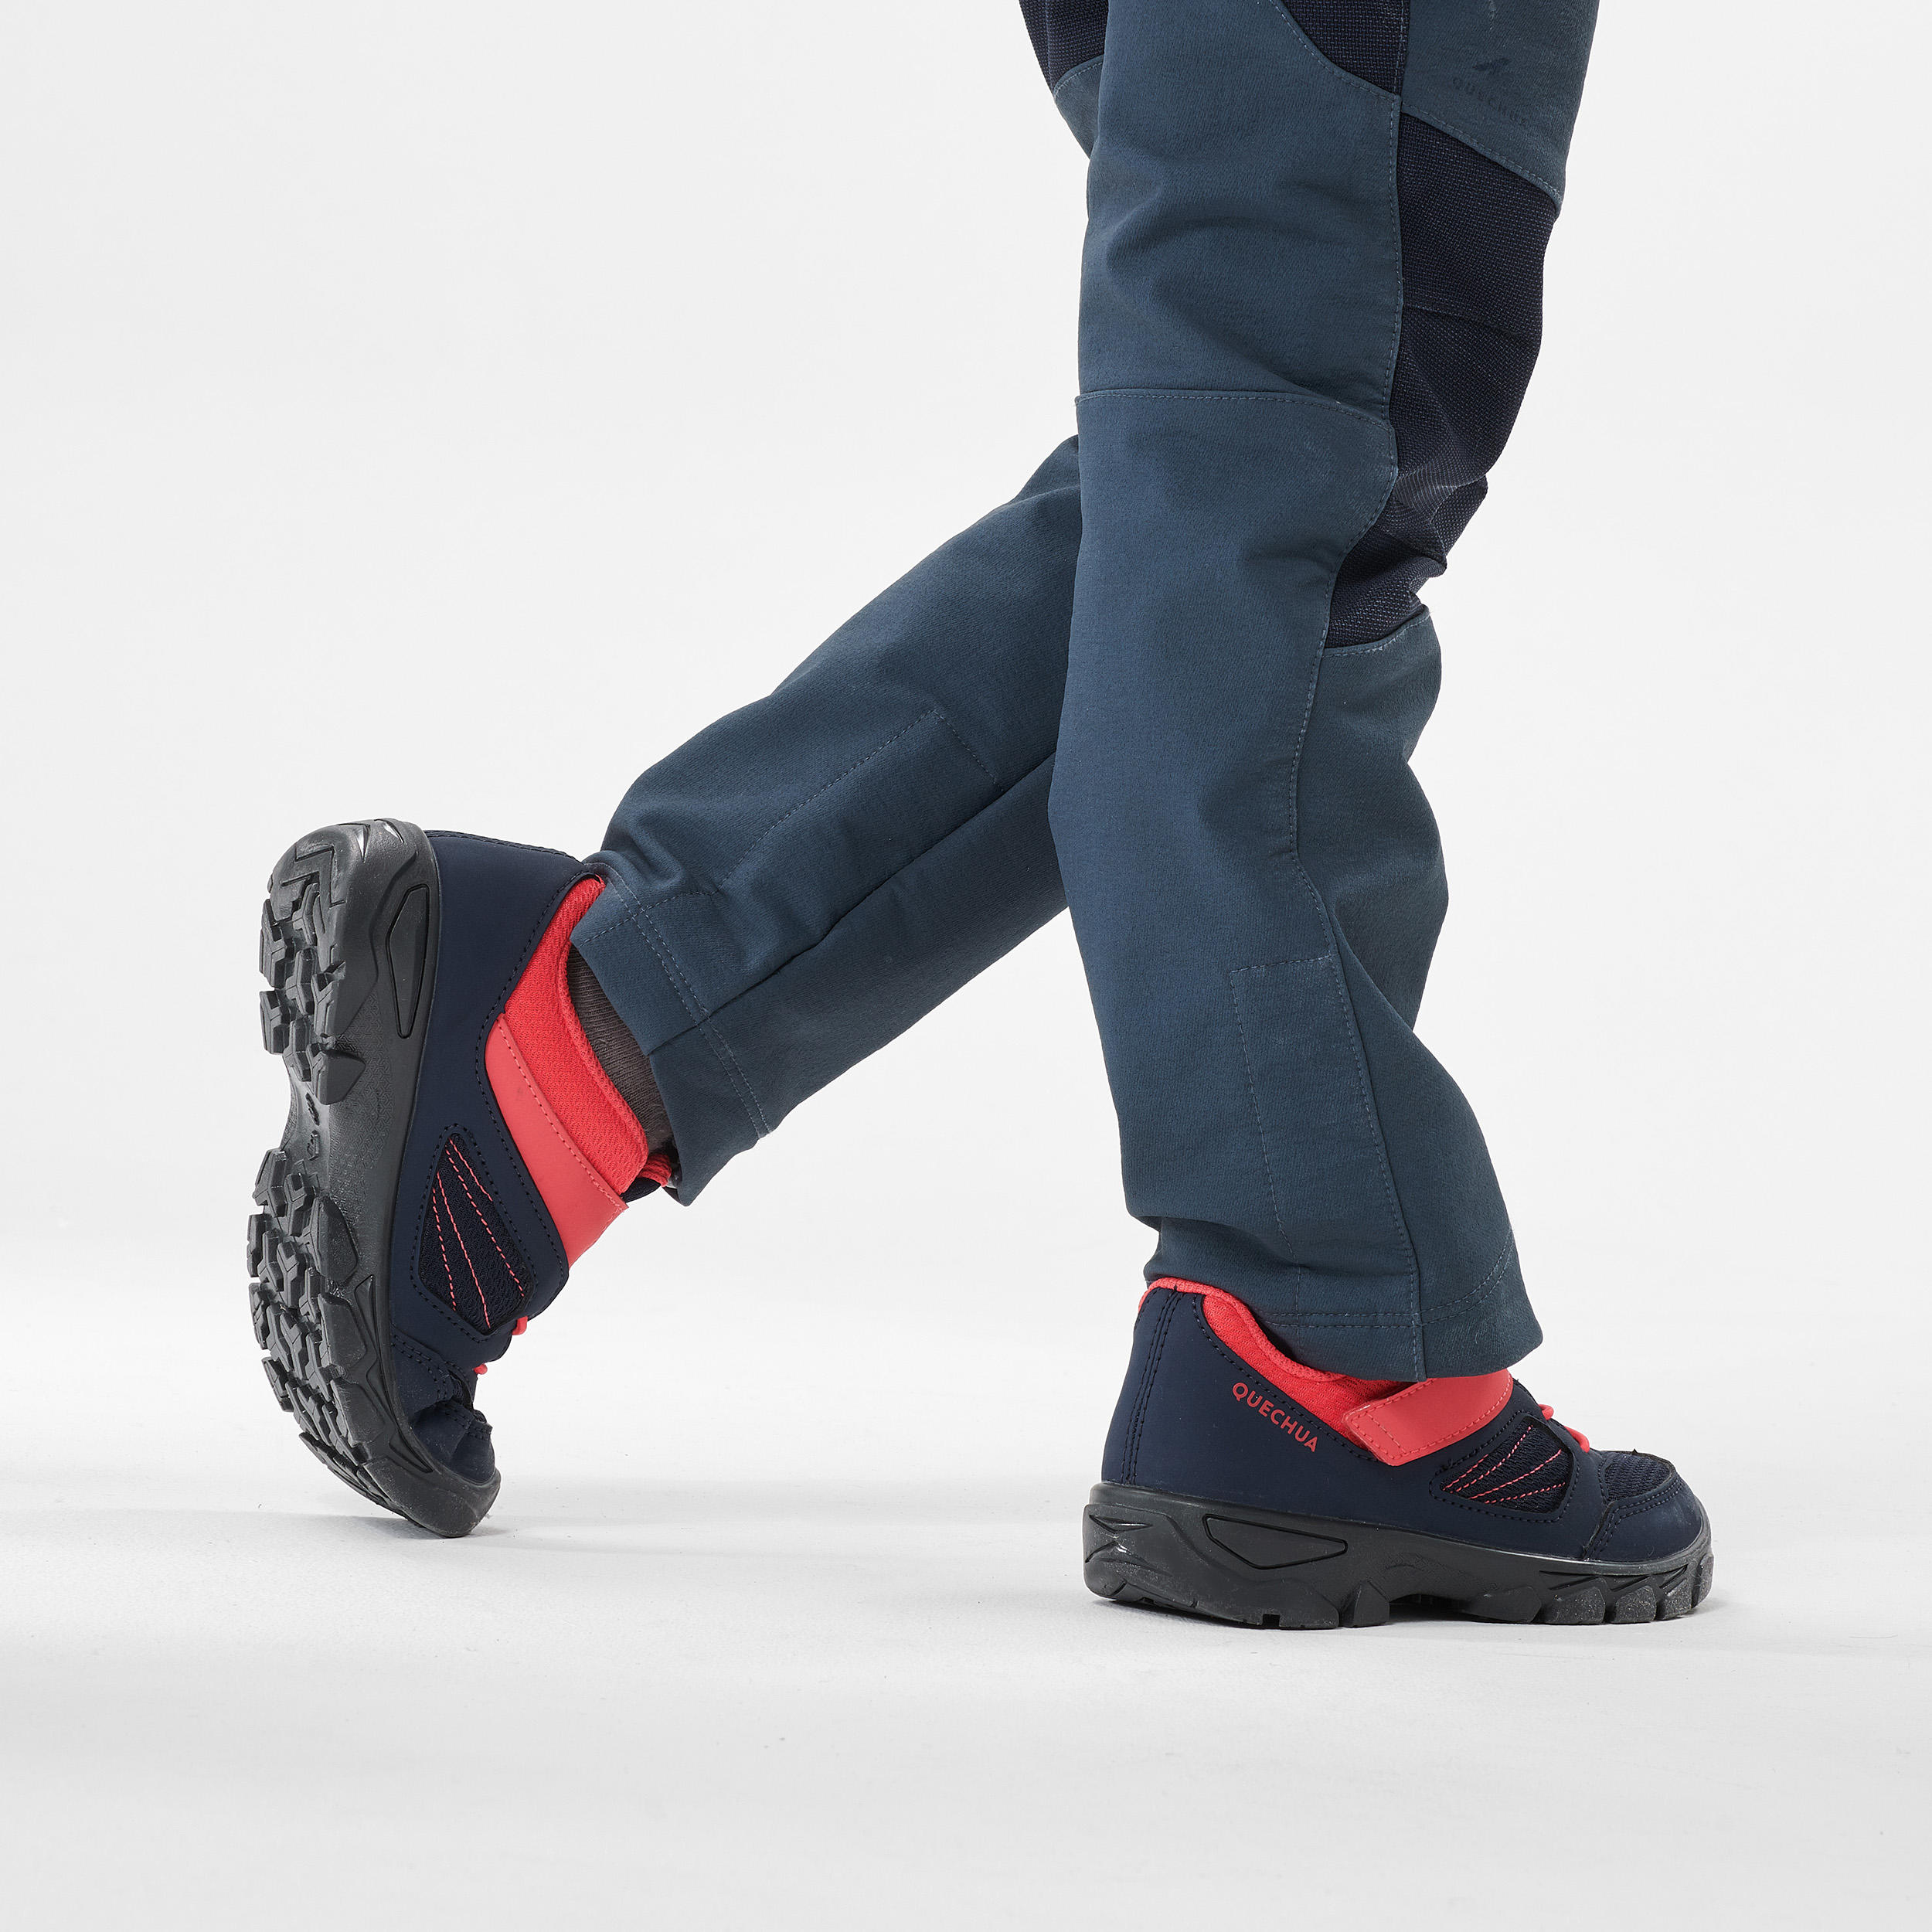 Chaussures de randonnée enfant – MH 100 bleu/rose - QUECHUA